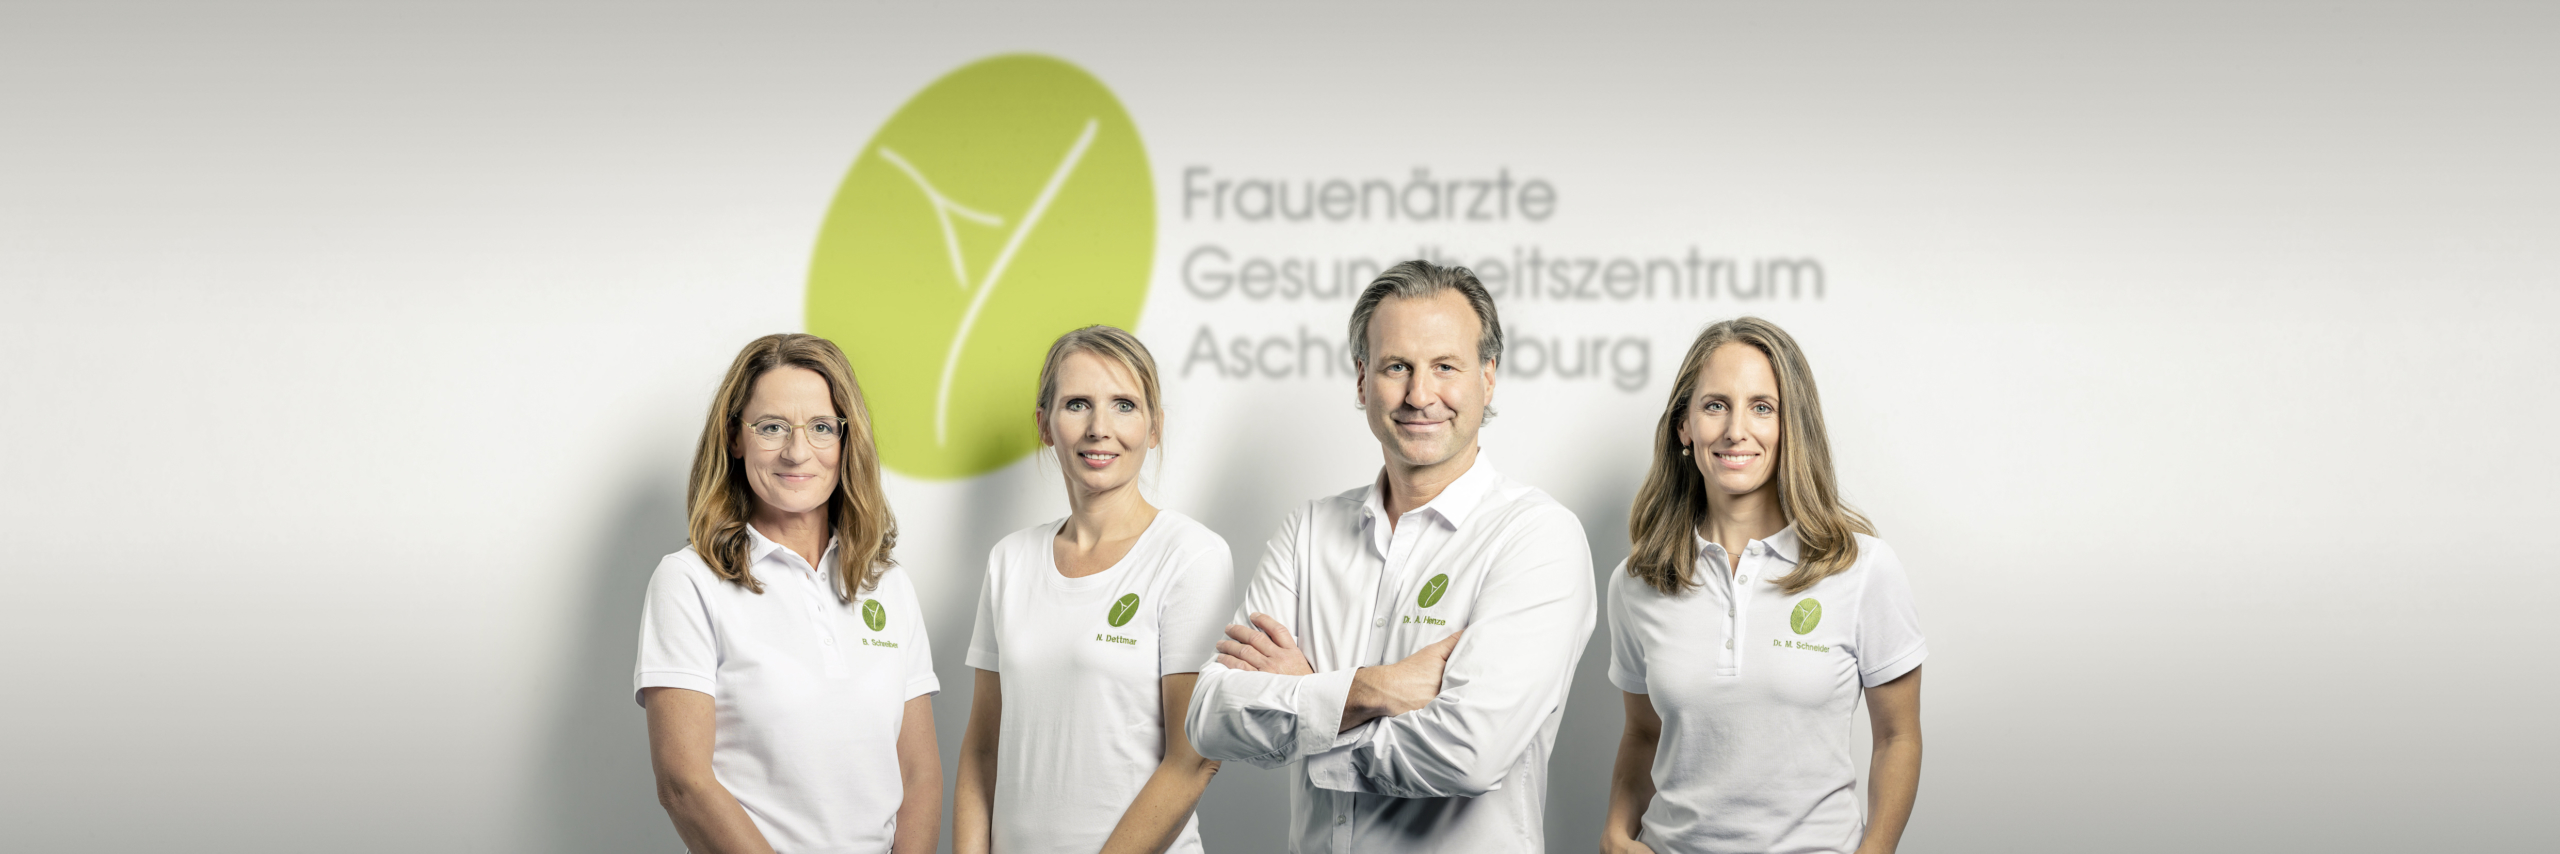 Ärzte-Team vom Frauenärzte Gesundheitszentrum Aschaffenburg